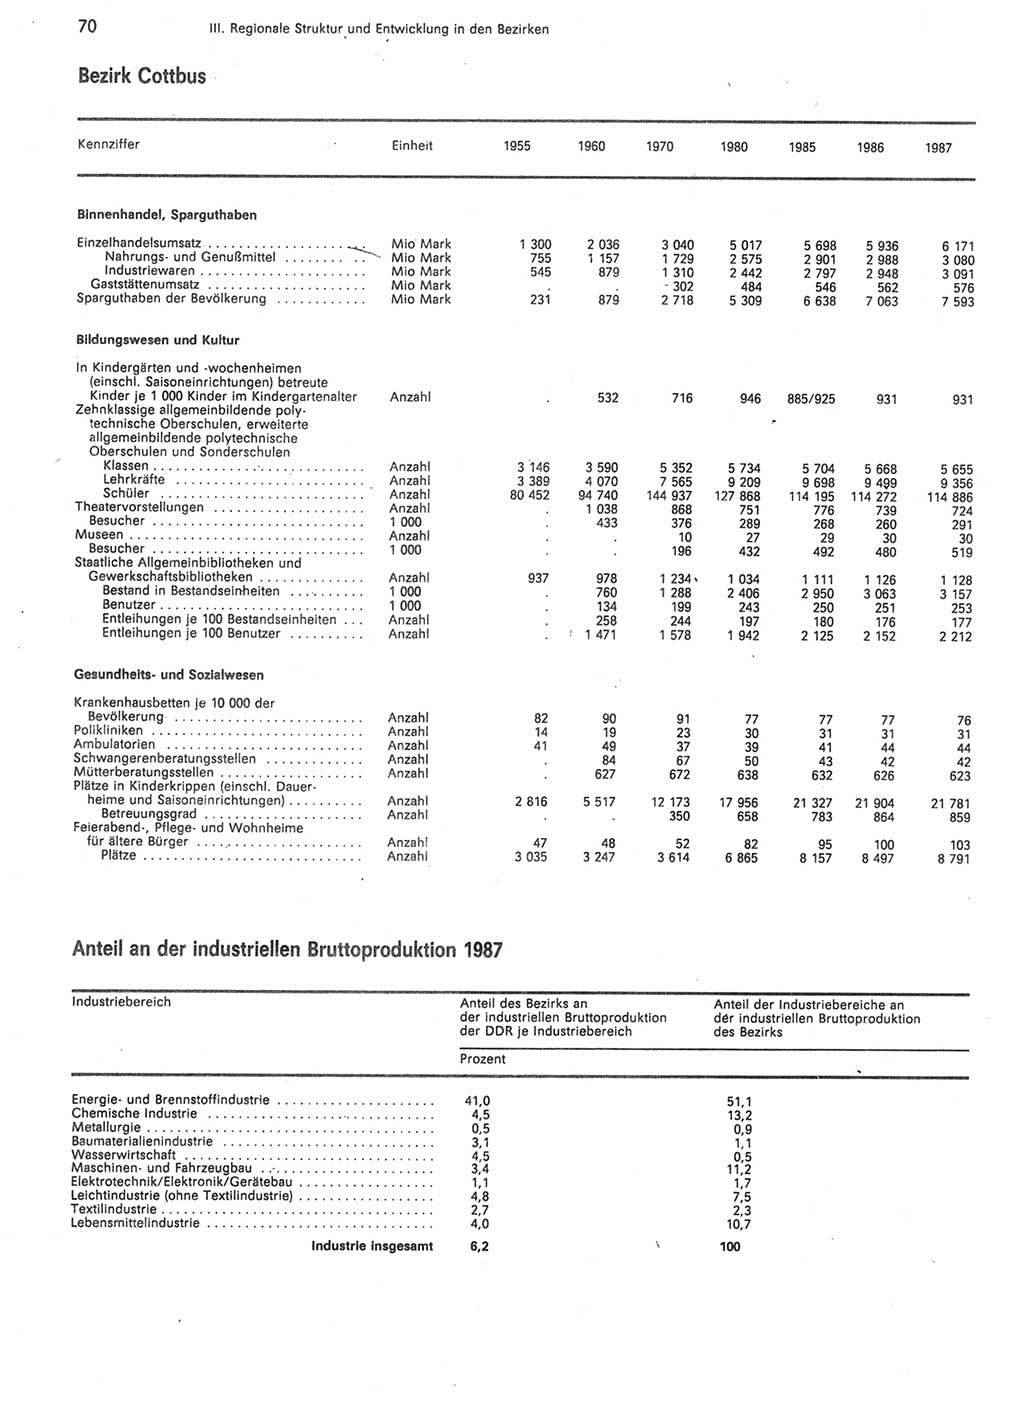 Statistisches Jahrbuch der Deutschen Demokratischen Republik (DDR) 1988, Seite 70 (Stat. Jb. DDR 1988, S. 70)